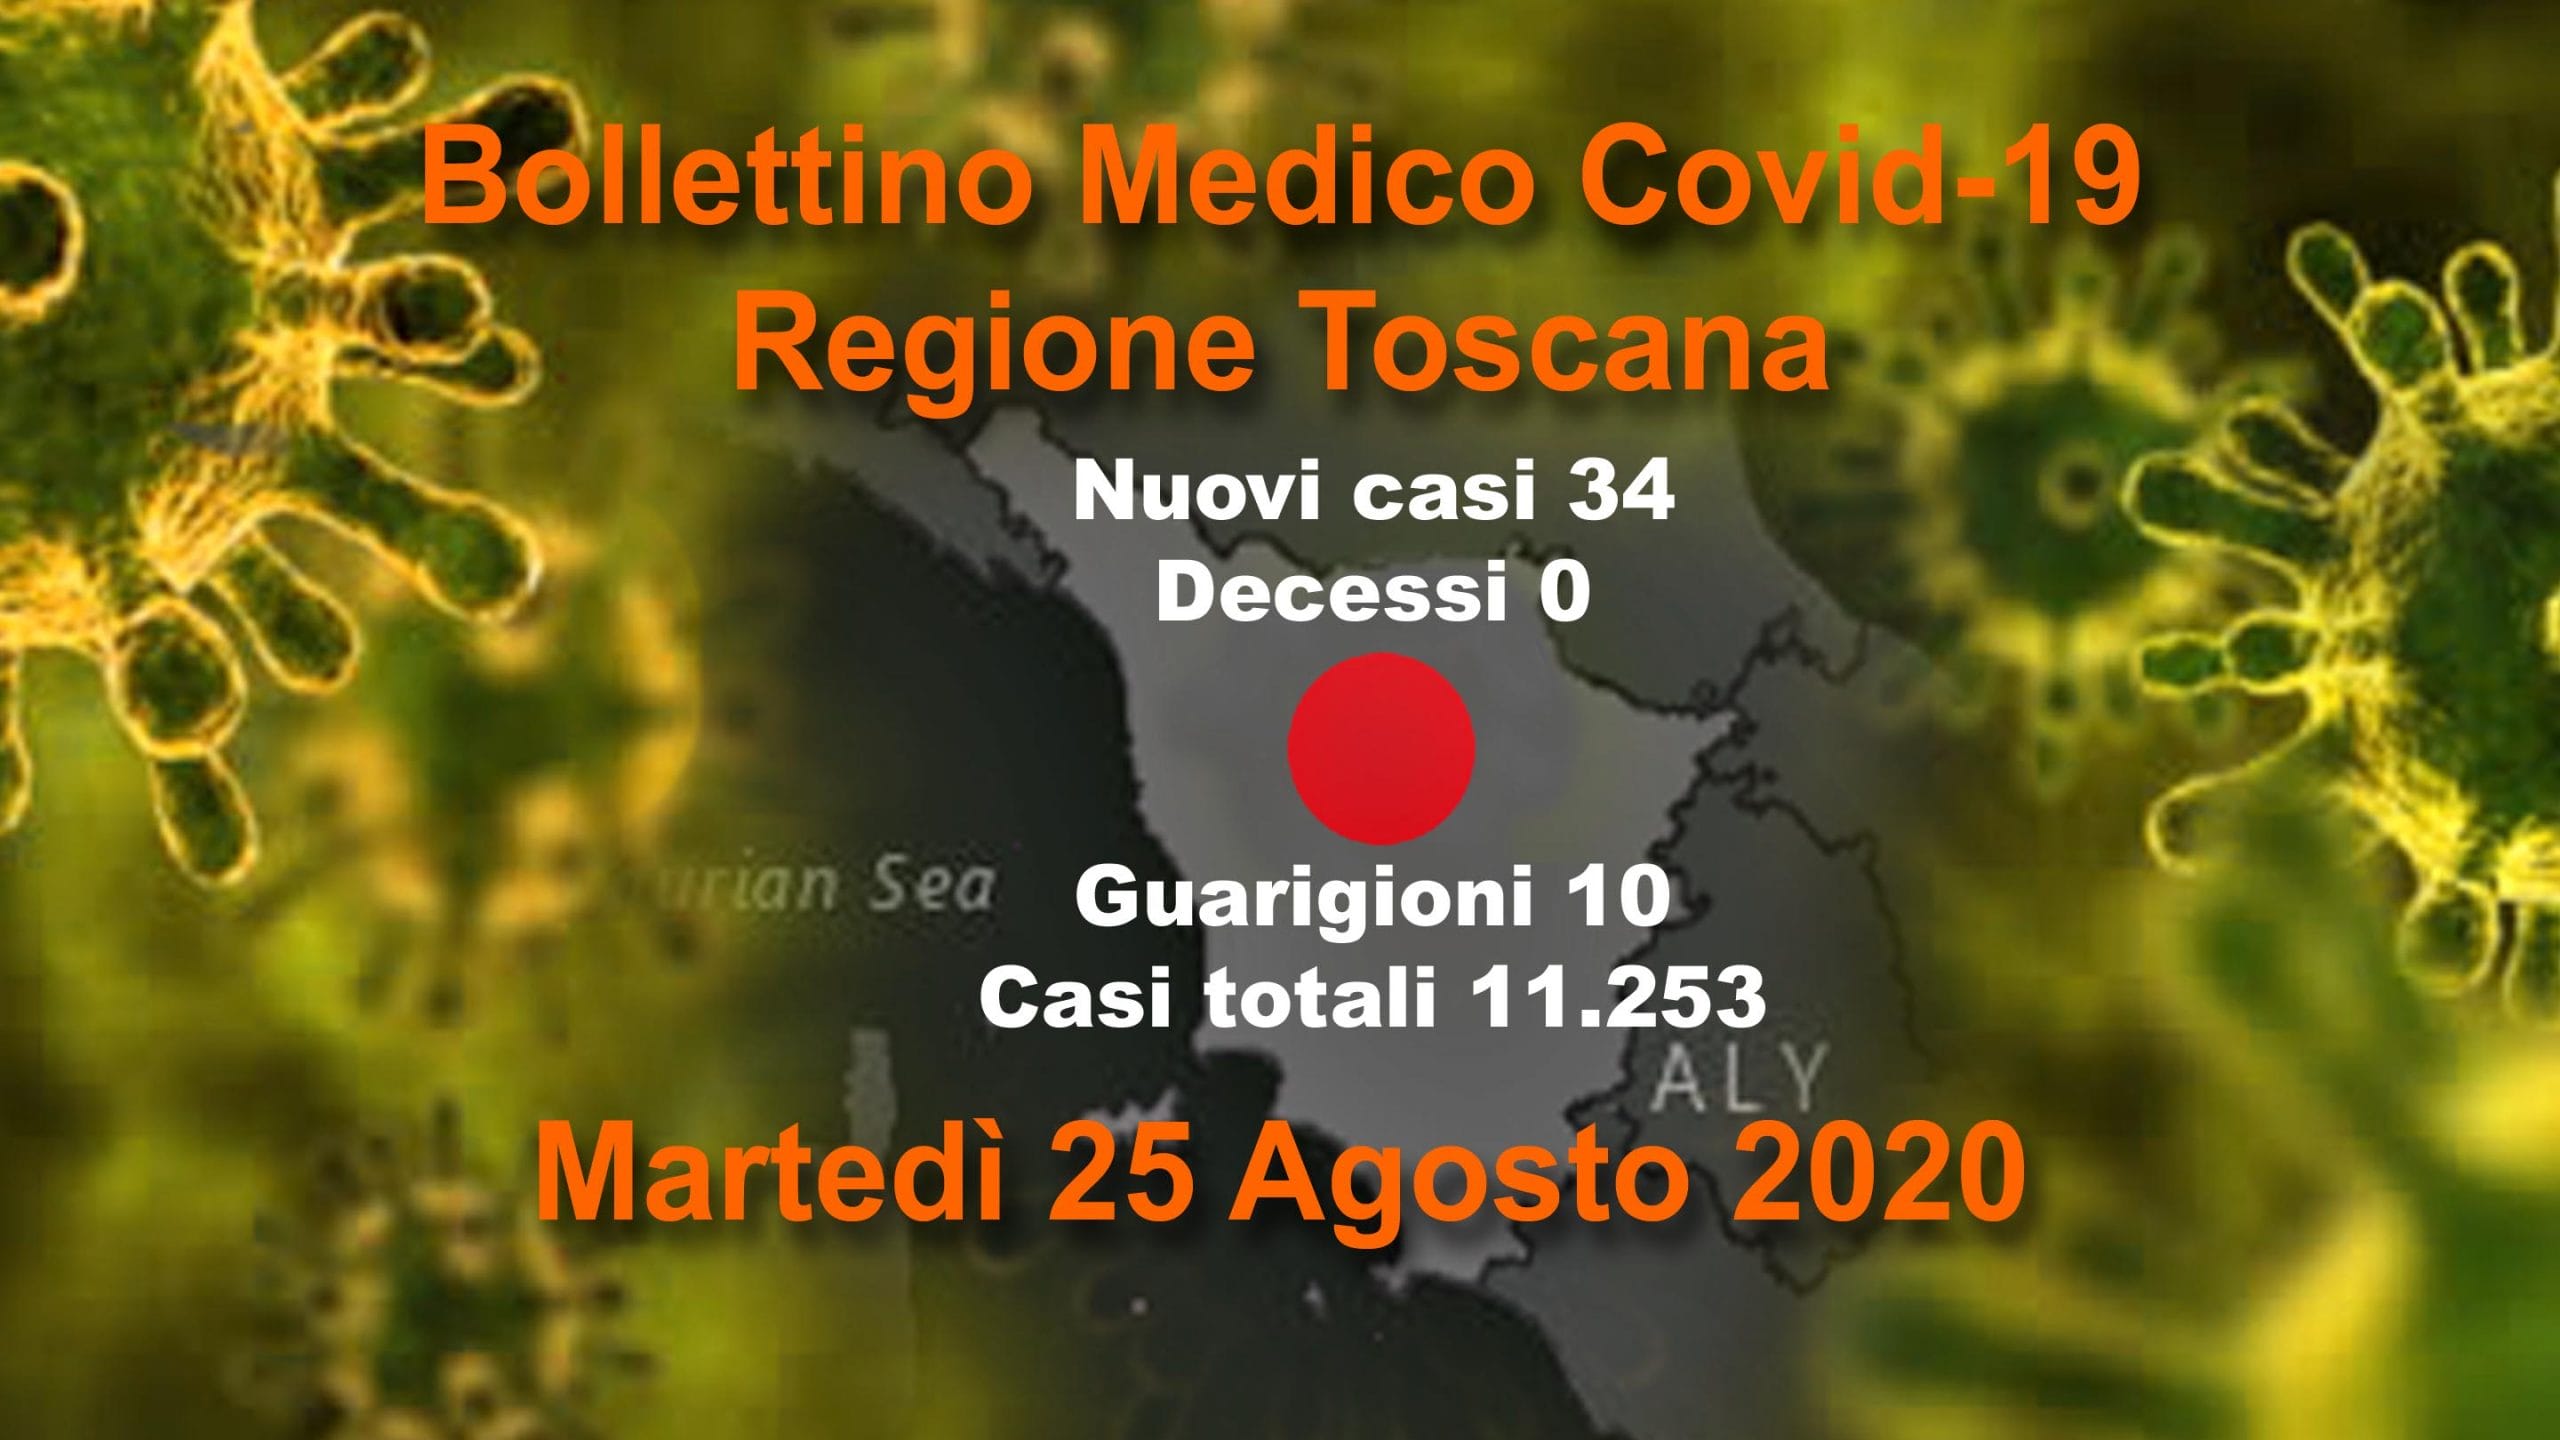 Coronavirus in Toscana: 34 nuovi casi, nessun decesso, 10 guarigioni